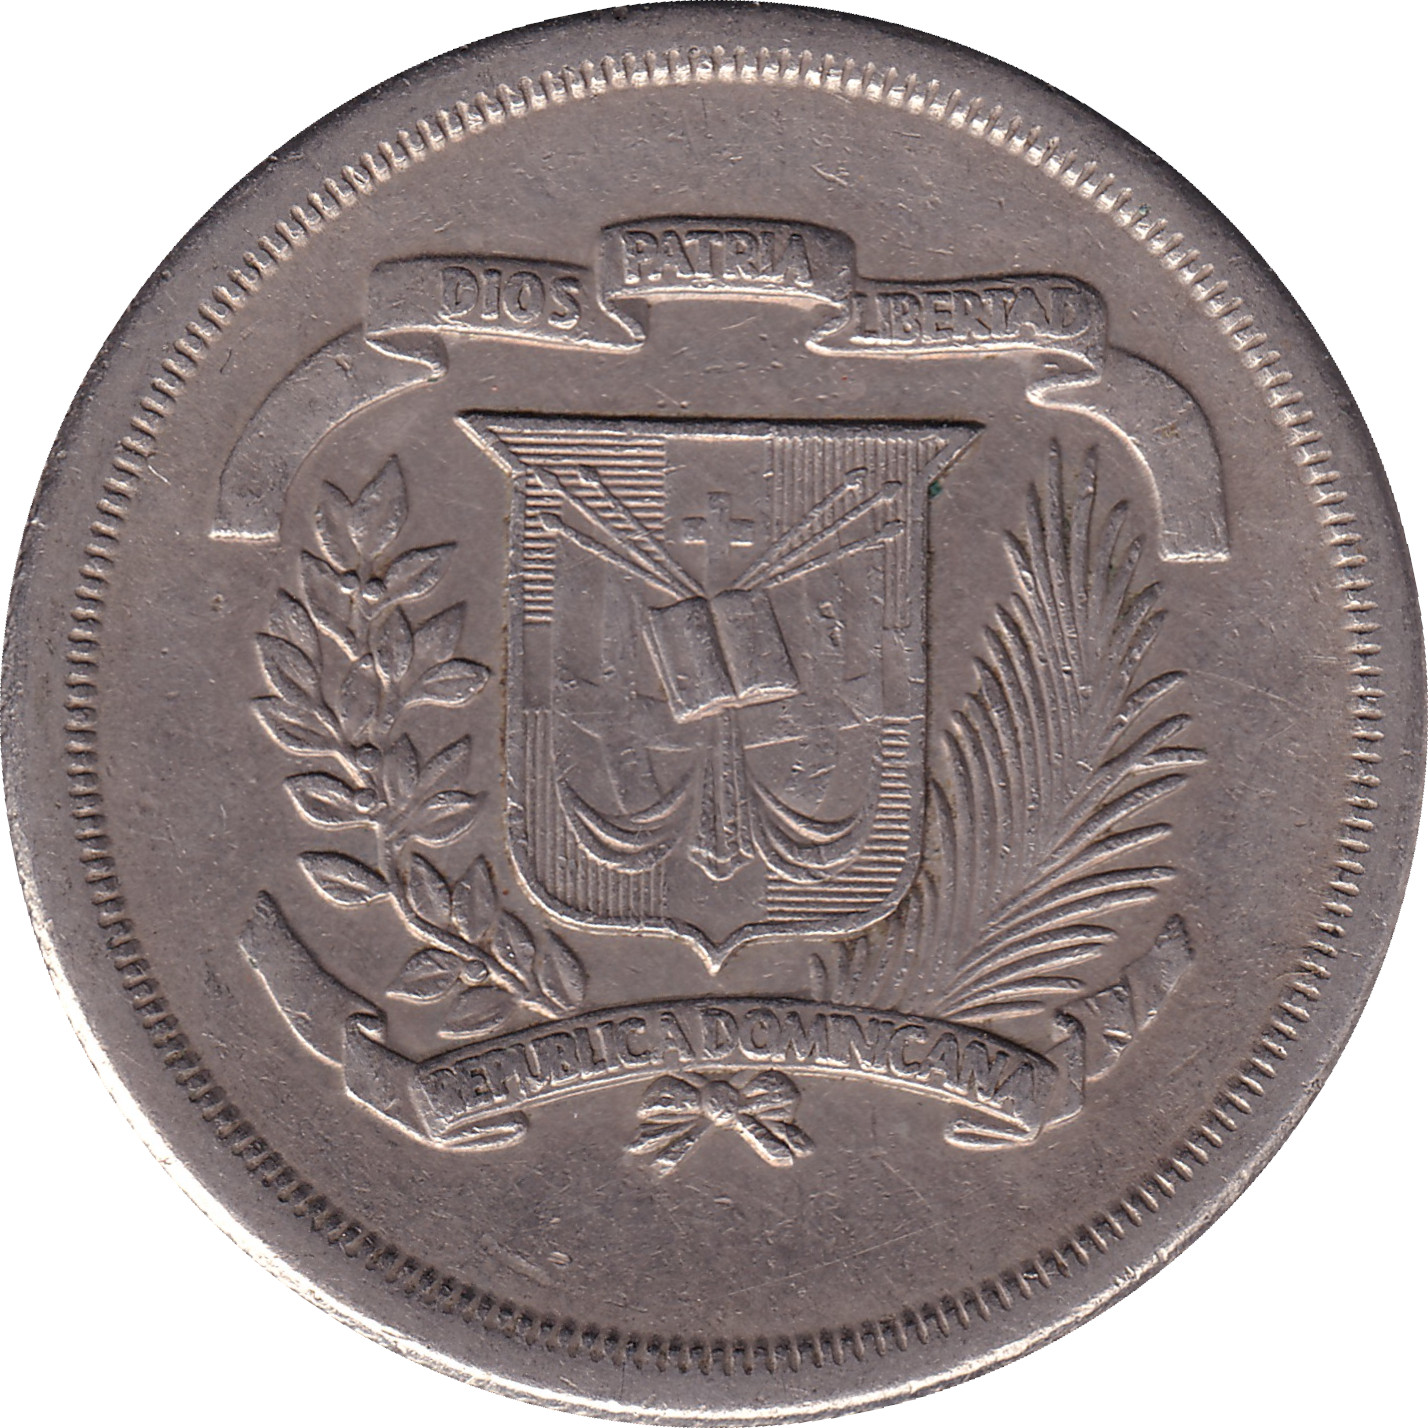 1/2 peso - Pablo Duarte